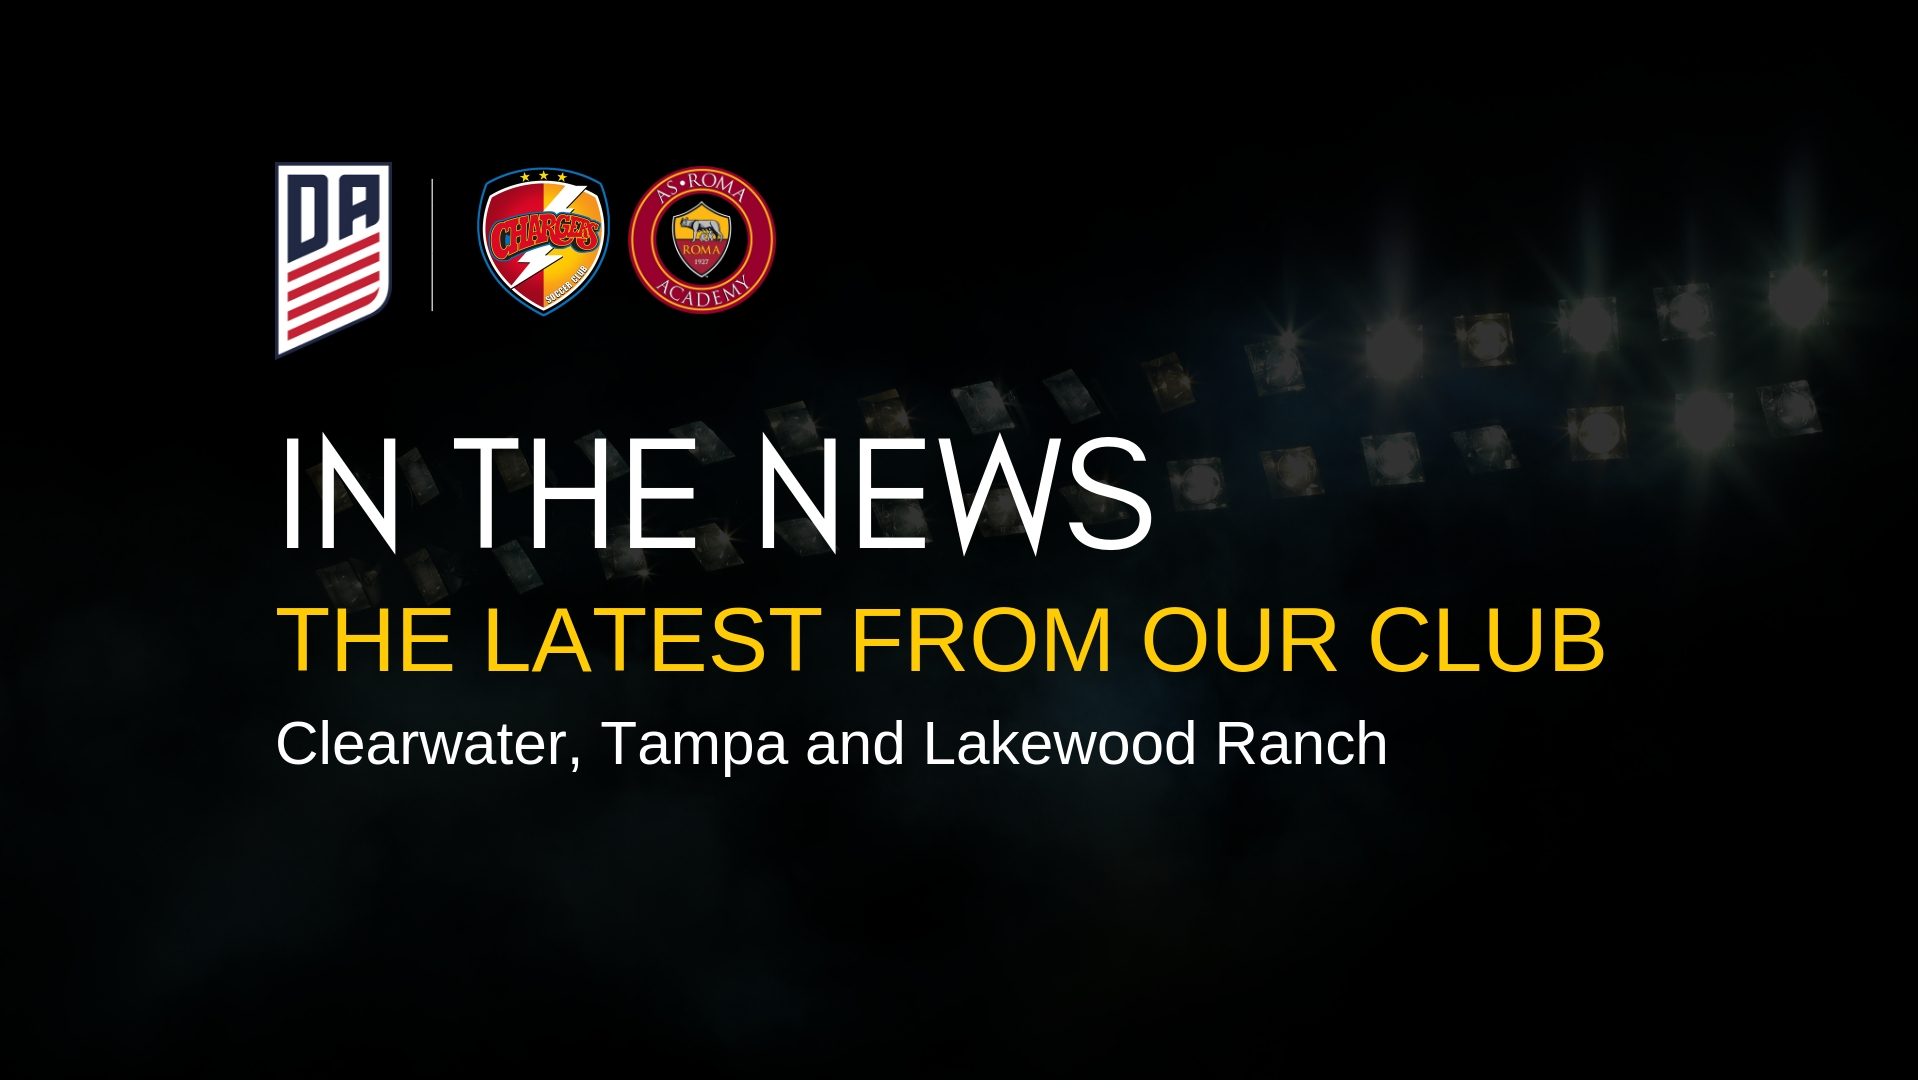 Club News & Happenings